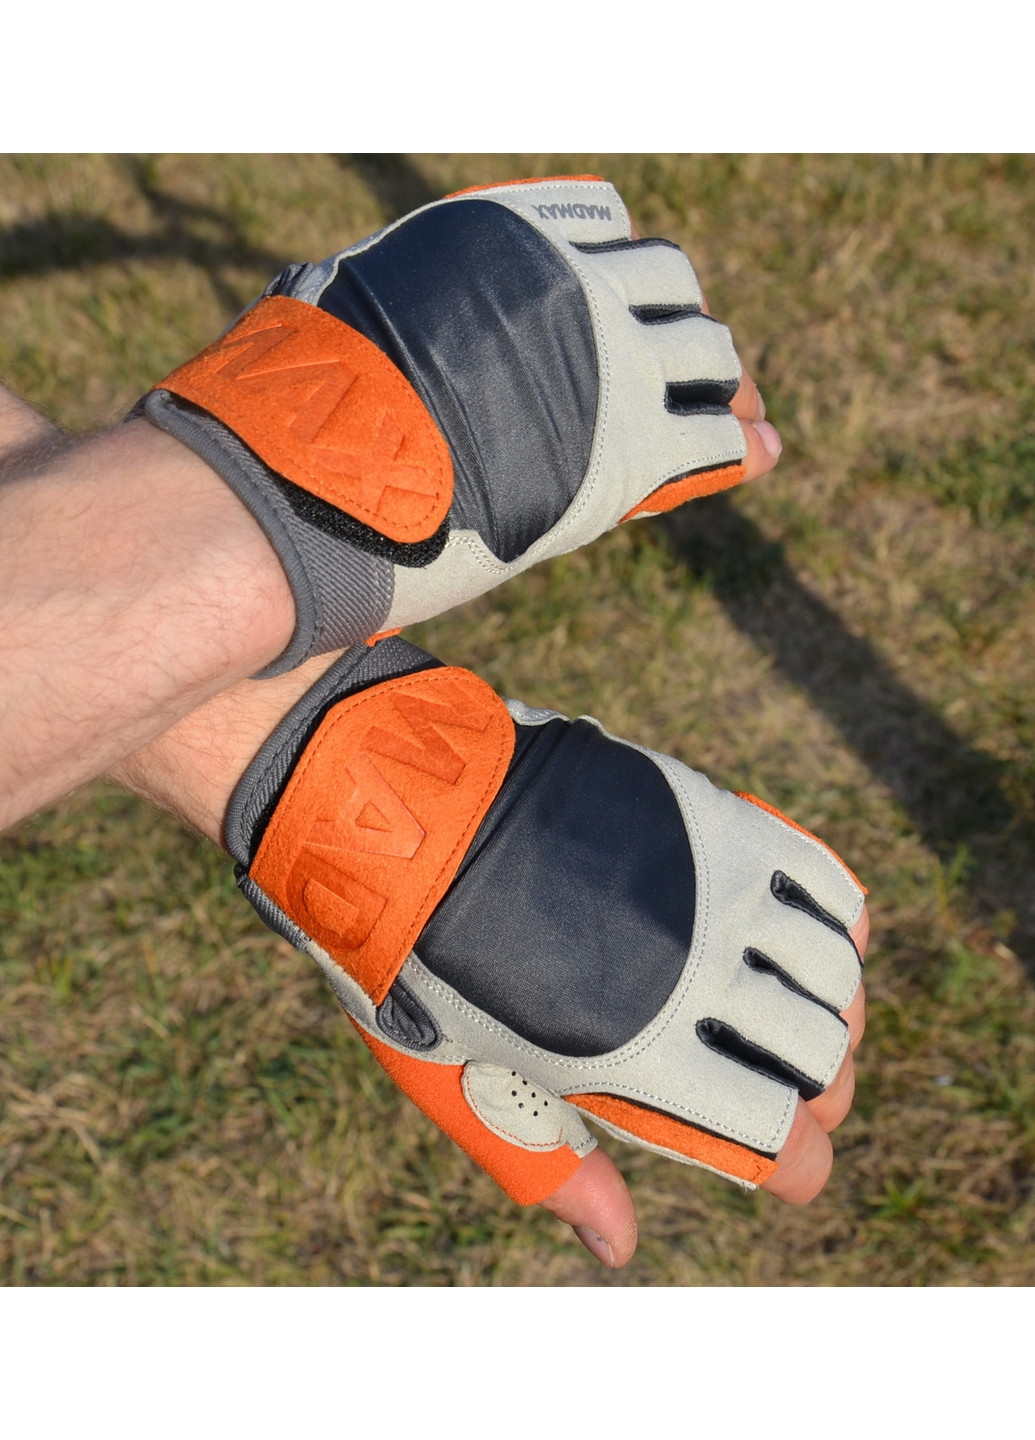 Унисекс перчатки для фитнеса M Mad Max (267656623)